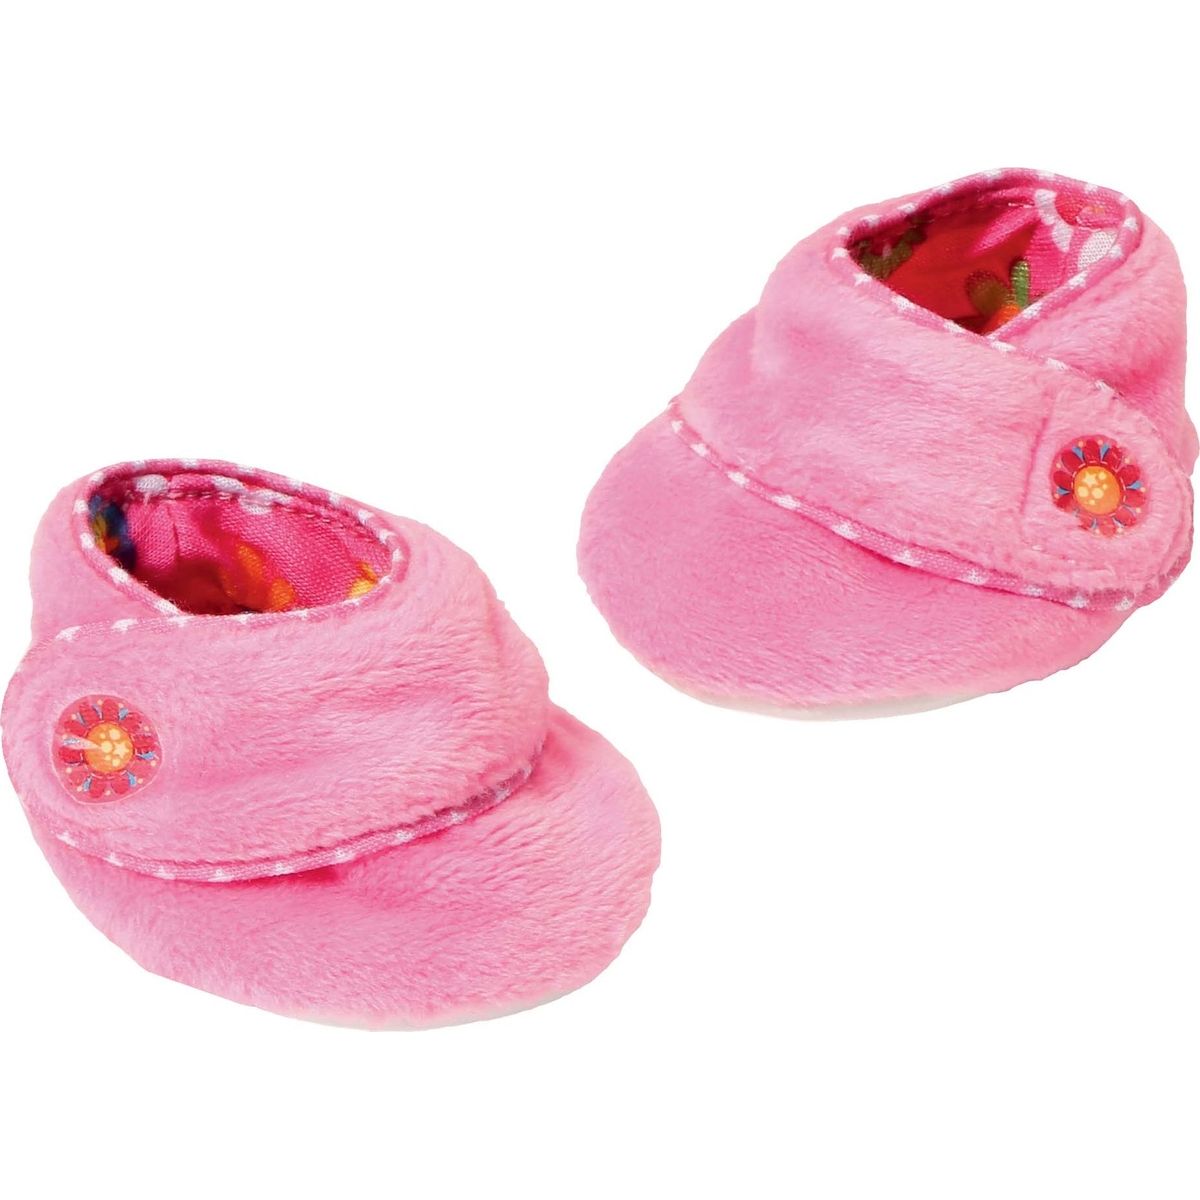 Dolly Moda Baby Botičky růžové